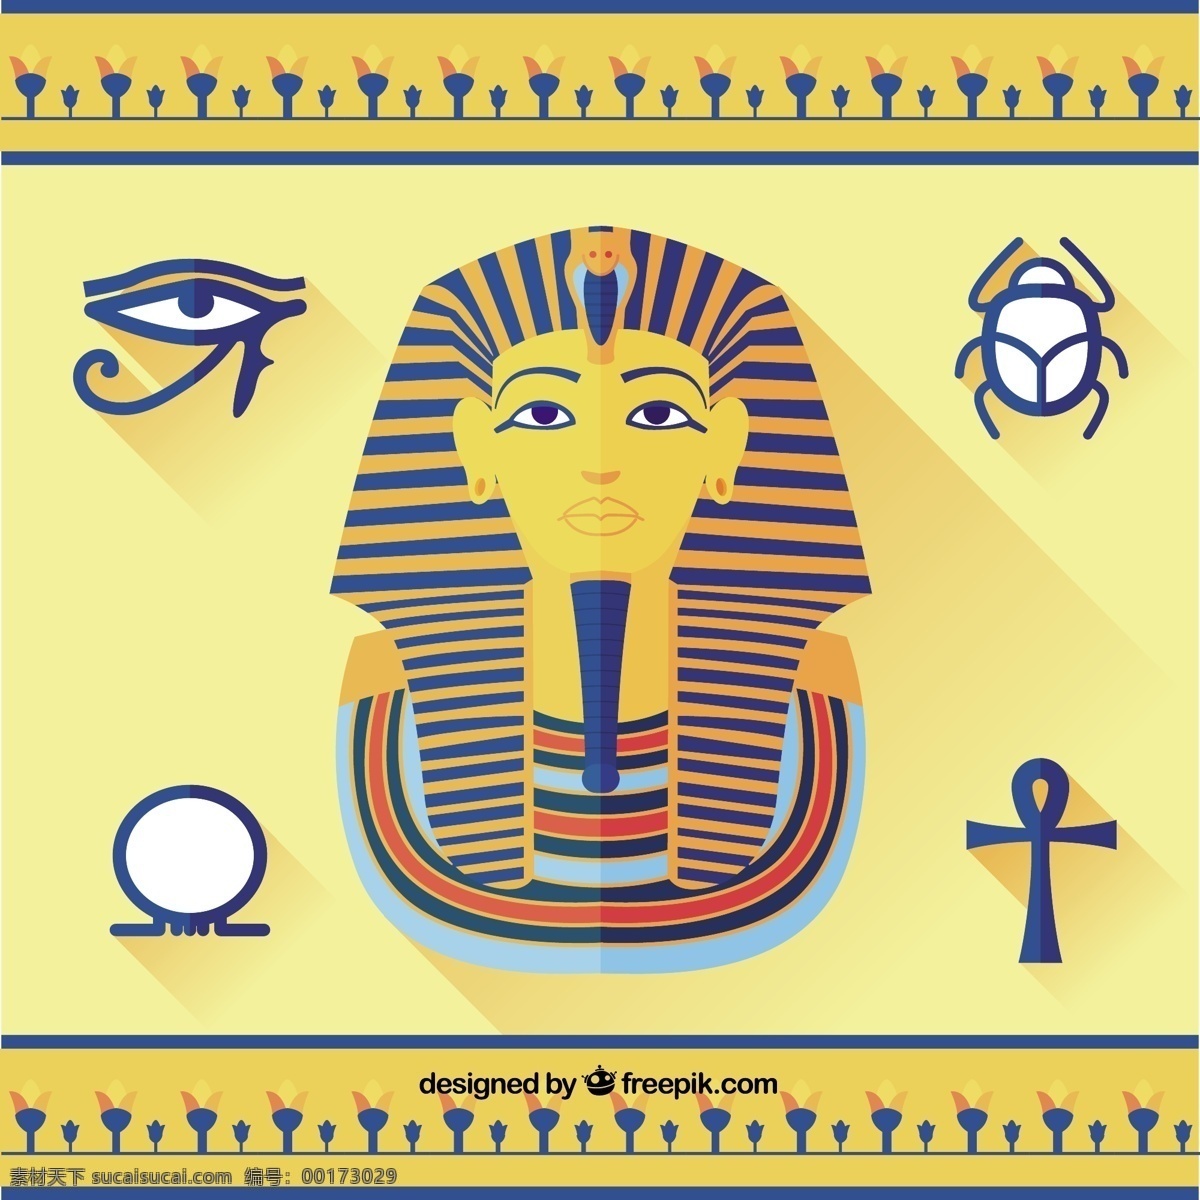 图坦 卡蒙 埃及 元素 饰品 眼 金字塔 埃及的历史 文化 古埃及的神庙 雕像 法老荷鲁斯 圣甲虫 吉萨 黄色